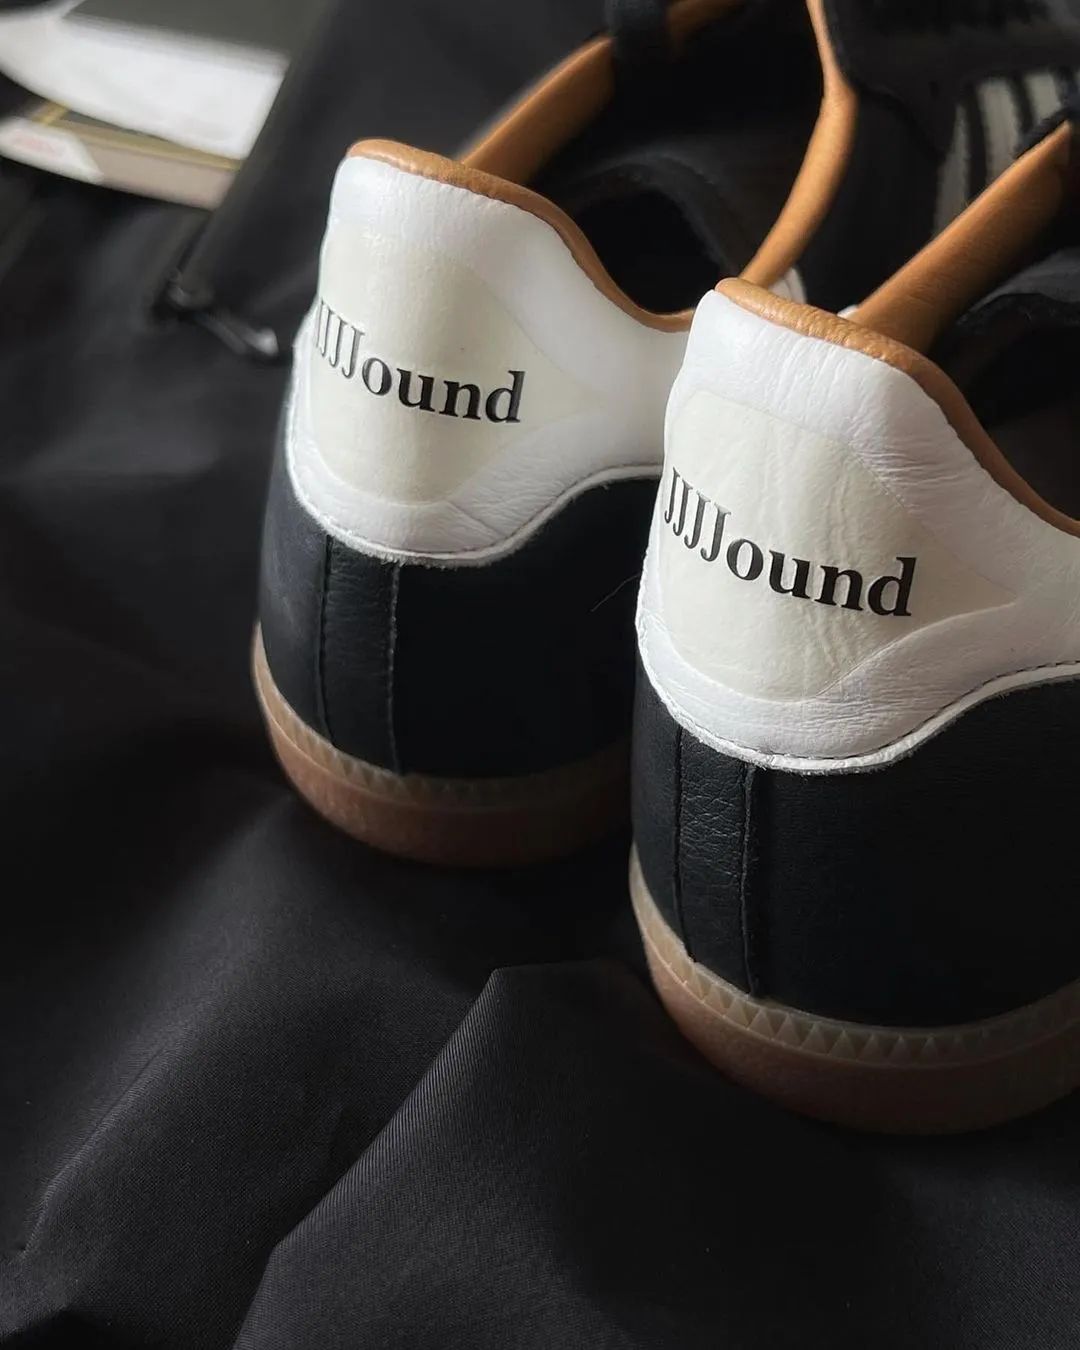 帅拉了！阿迪 x JJJJound第1次初代联名鞋款曝光，确认发售！